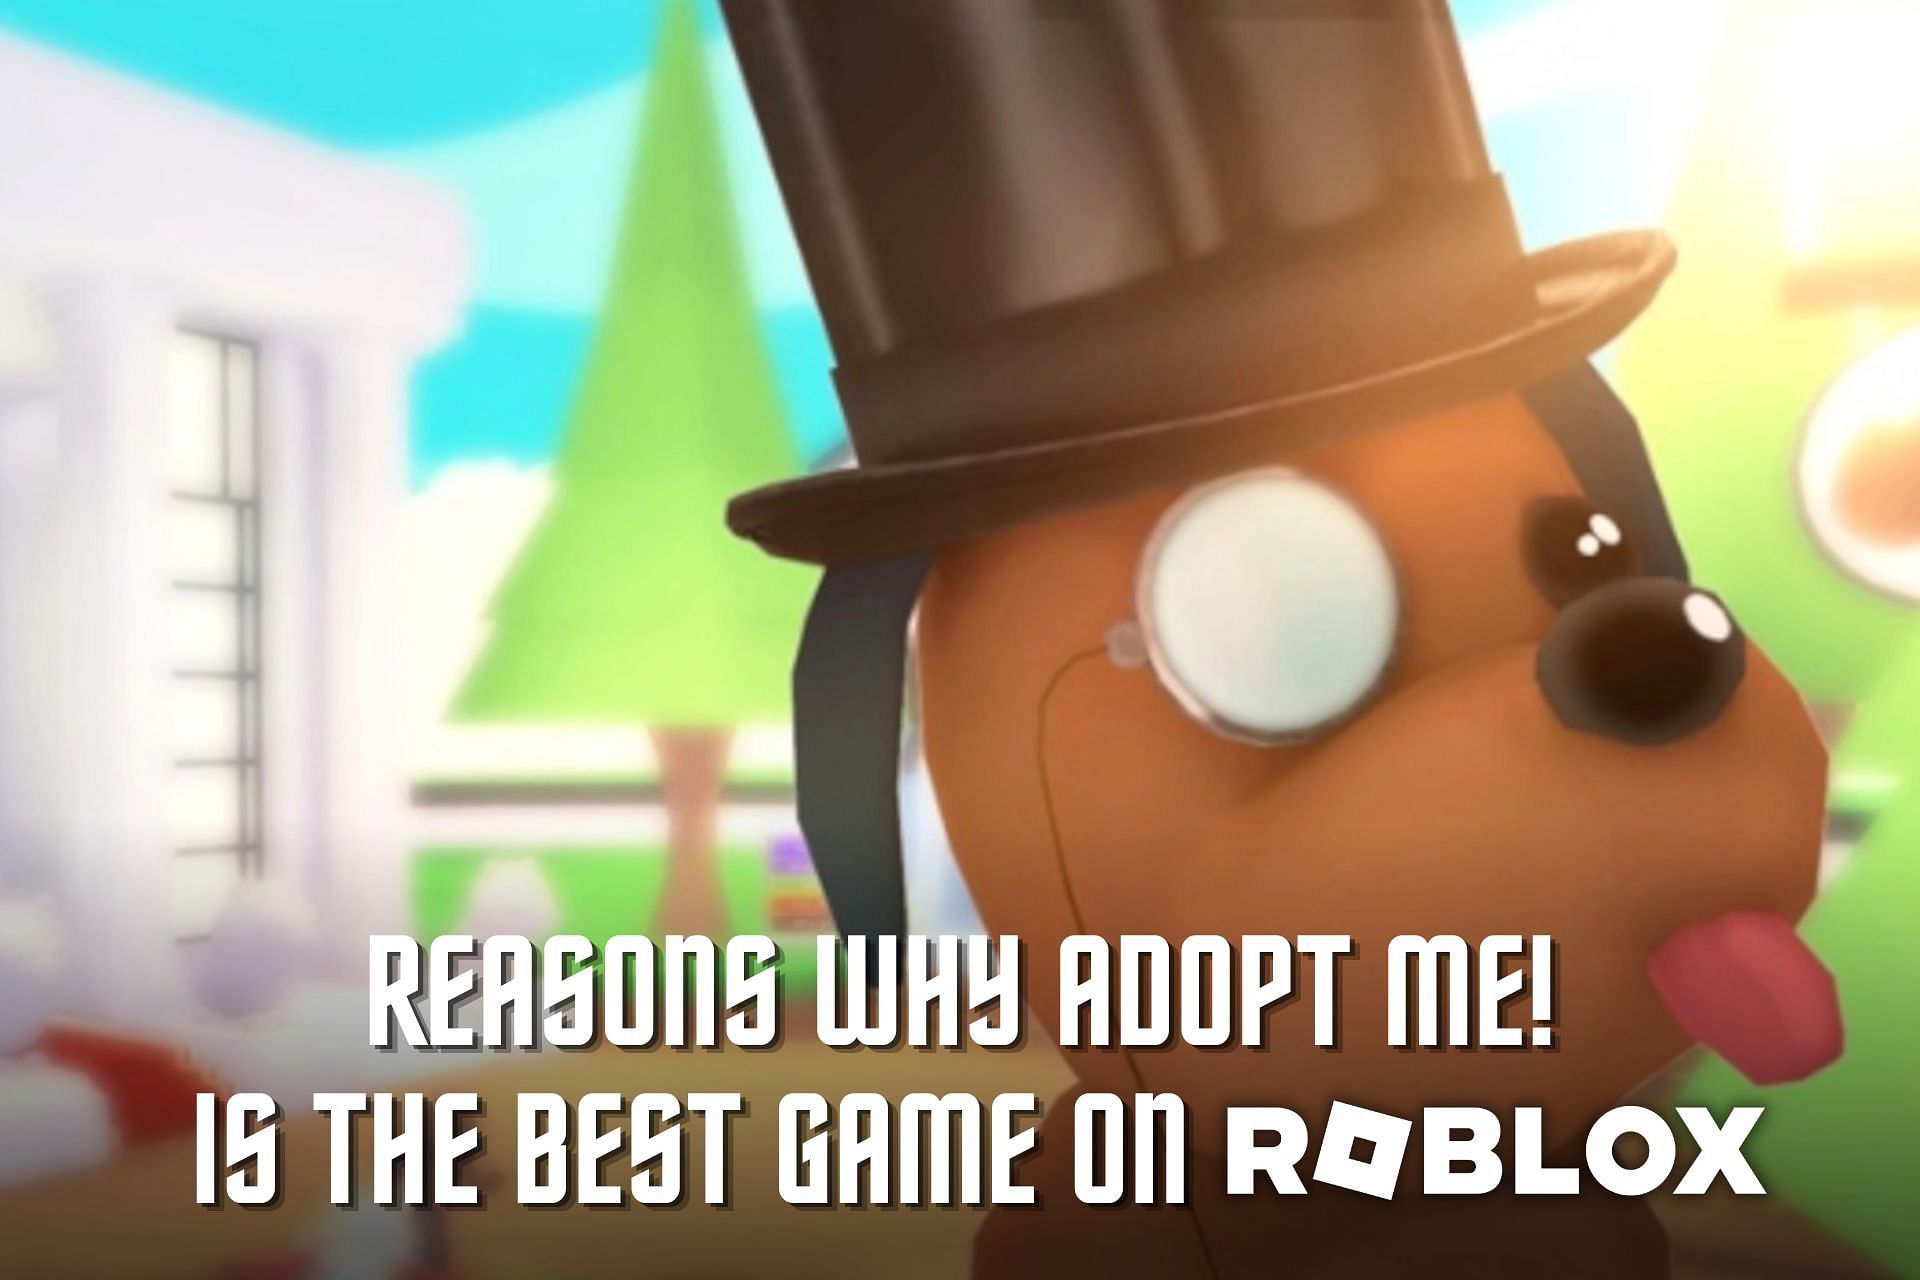 Roblox Adopt Me! is the best game (Image via Sportskeeda)